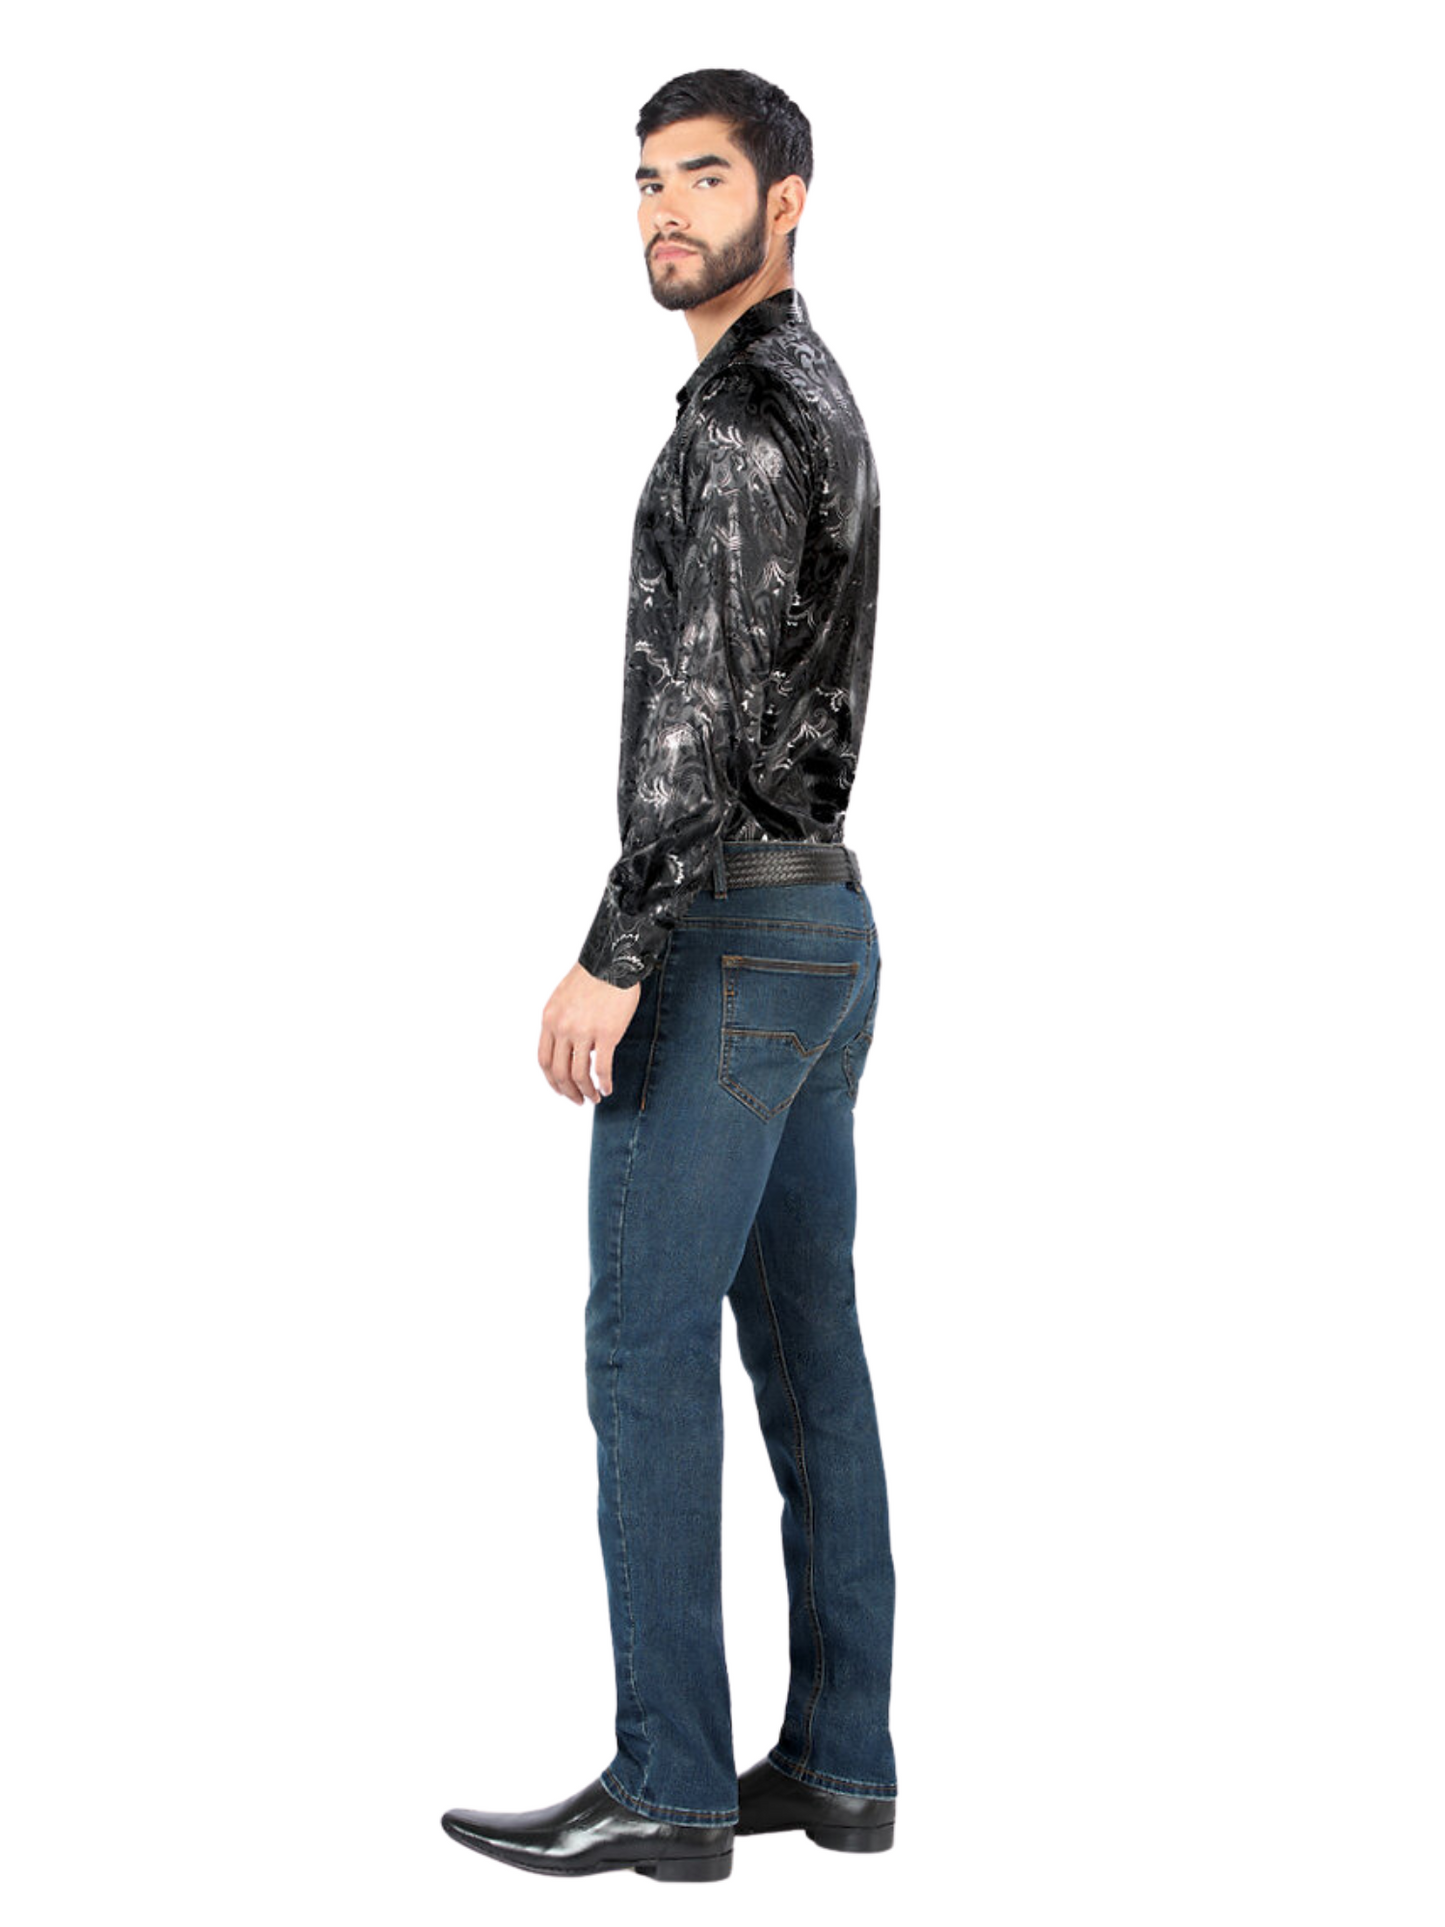 Pantalon Vaquero de Mezclilla Stretch para Hombre 'Montero' - ID: 5304 Pantalones de Vaquero Montero 